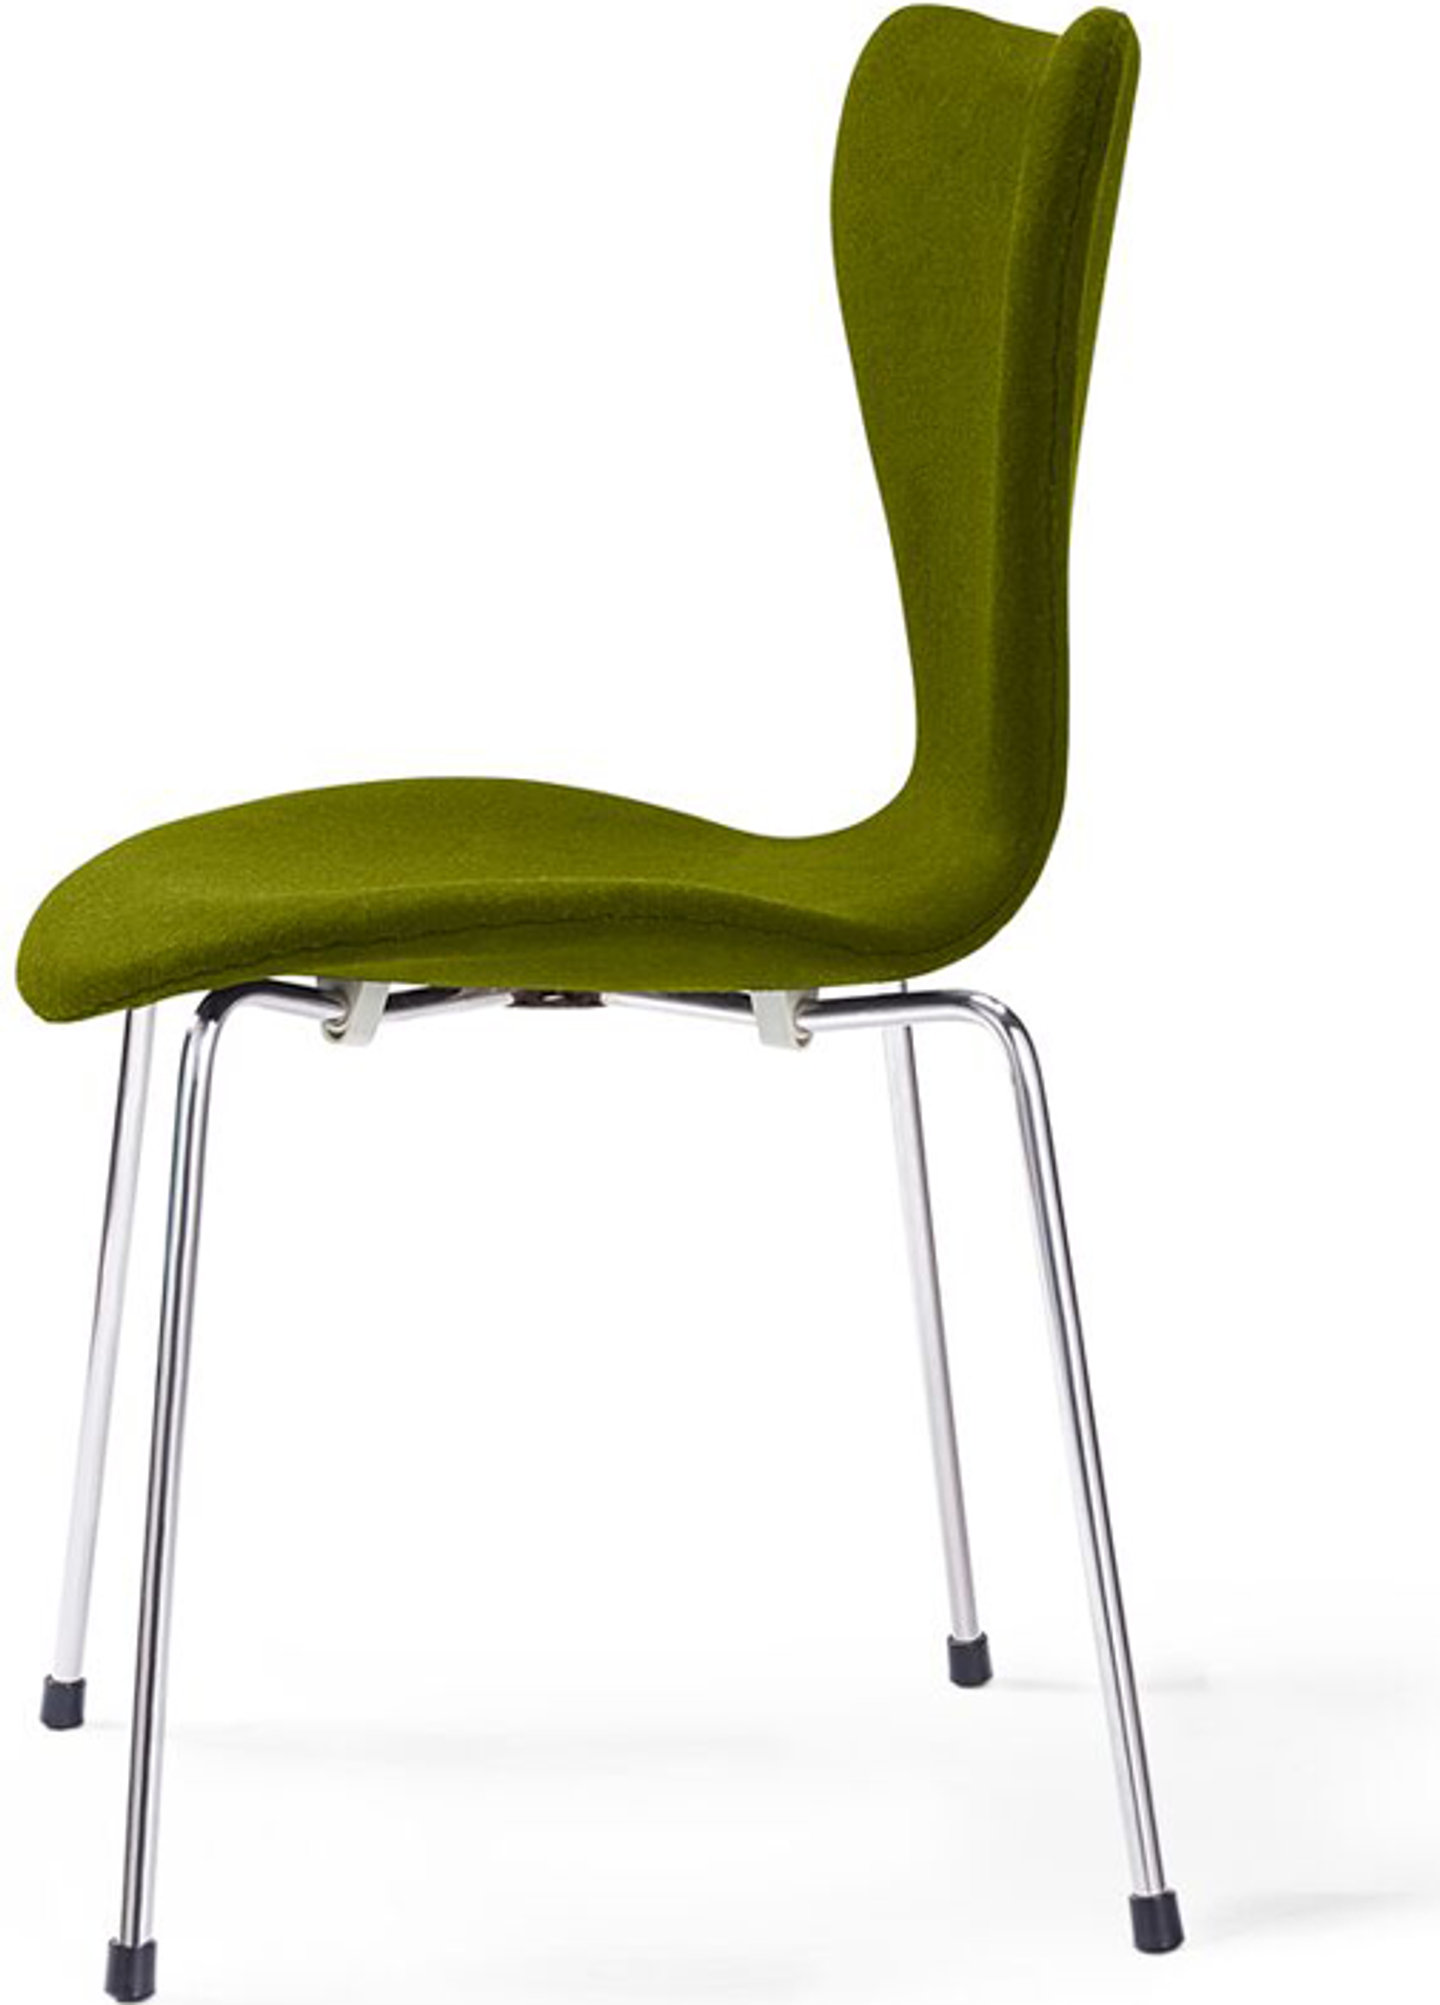 Chaise de la série 7 rembourrée Olive image.